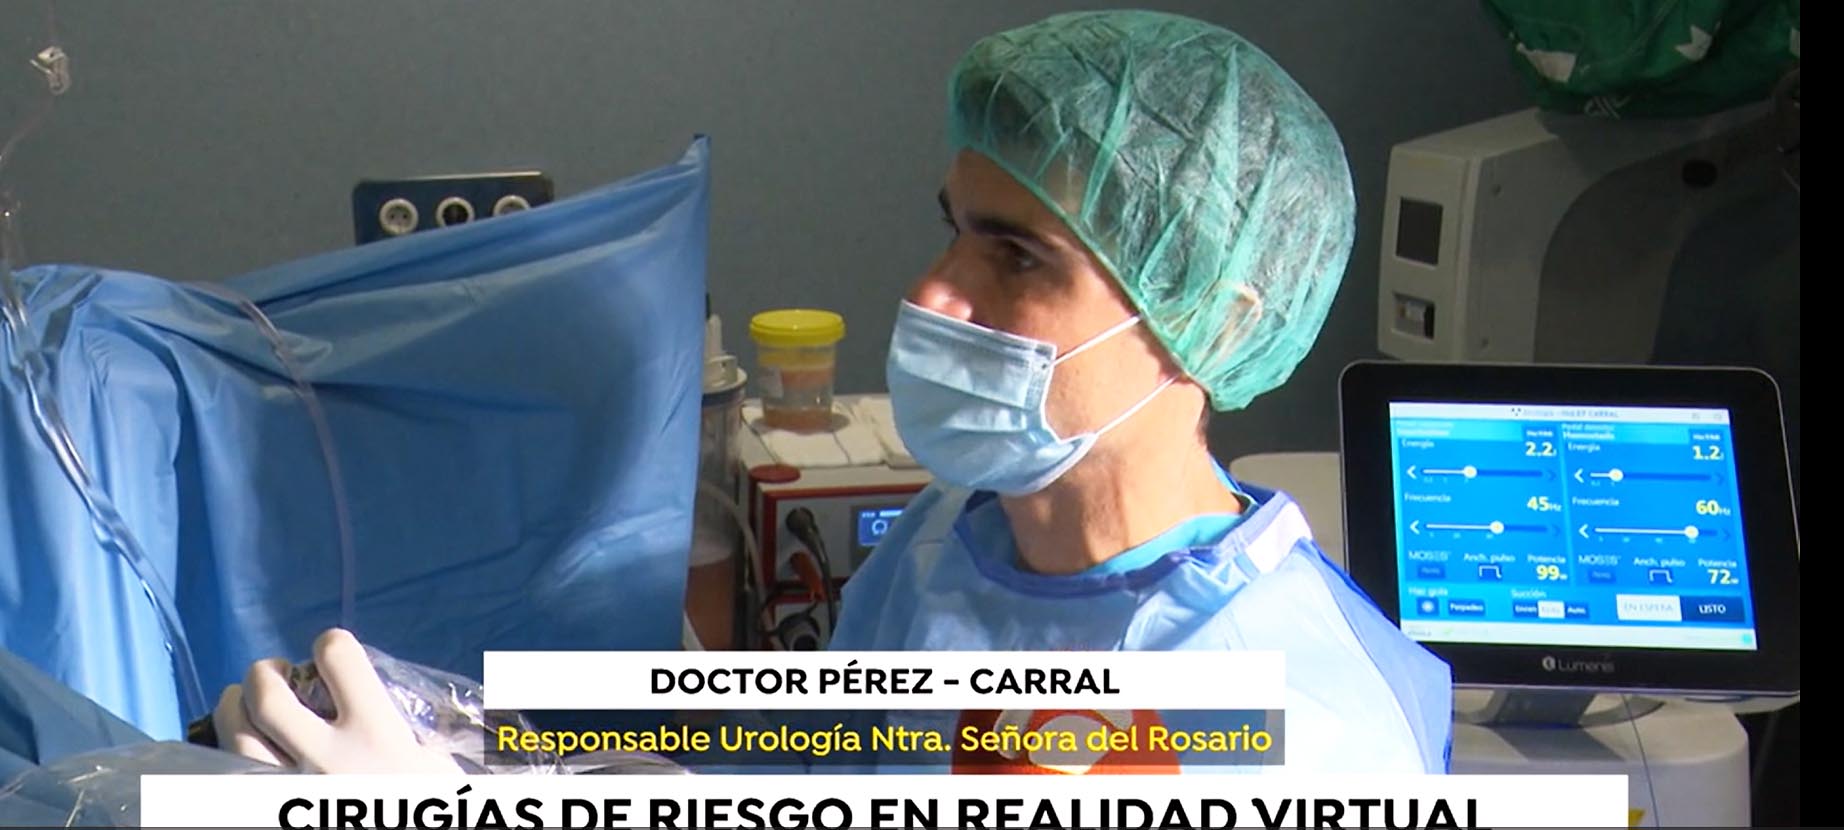 Dr. Pérez-Carral